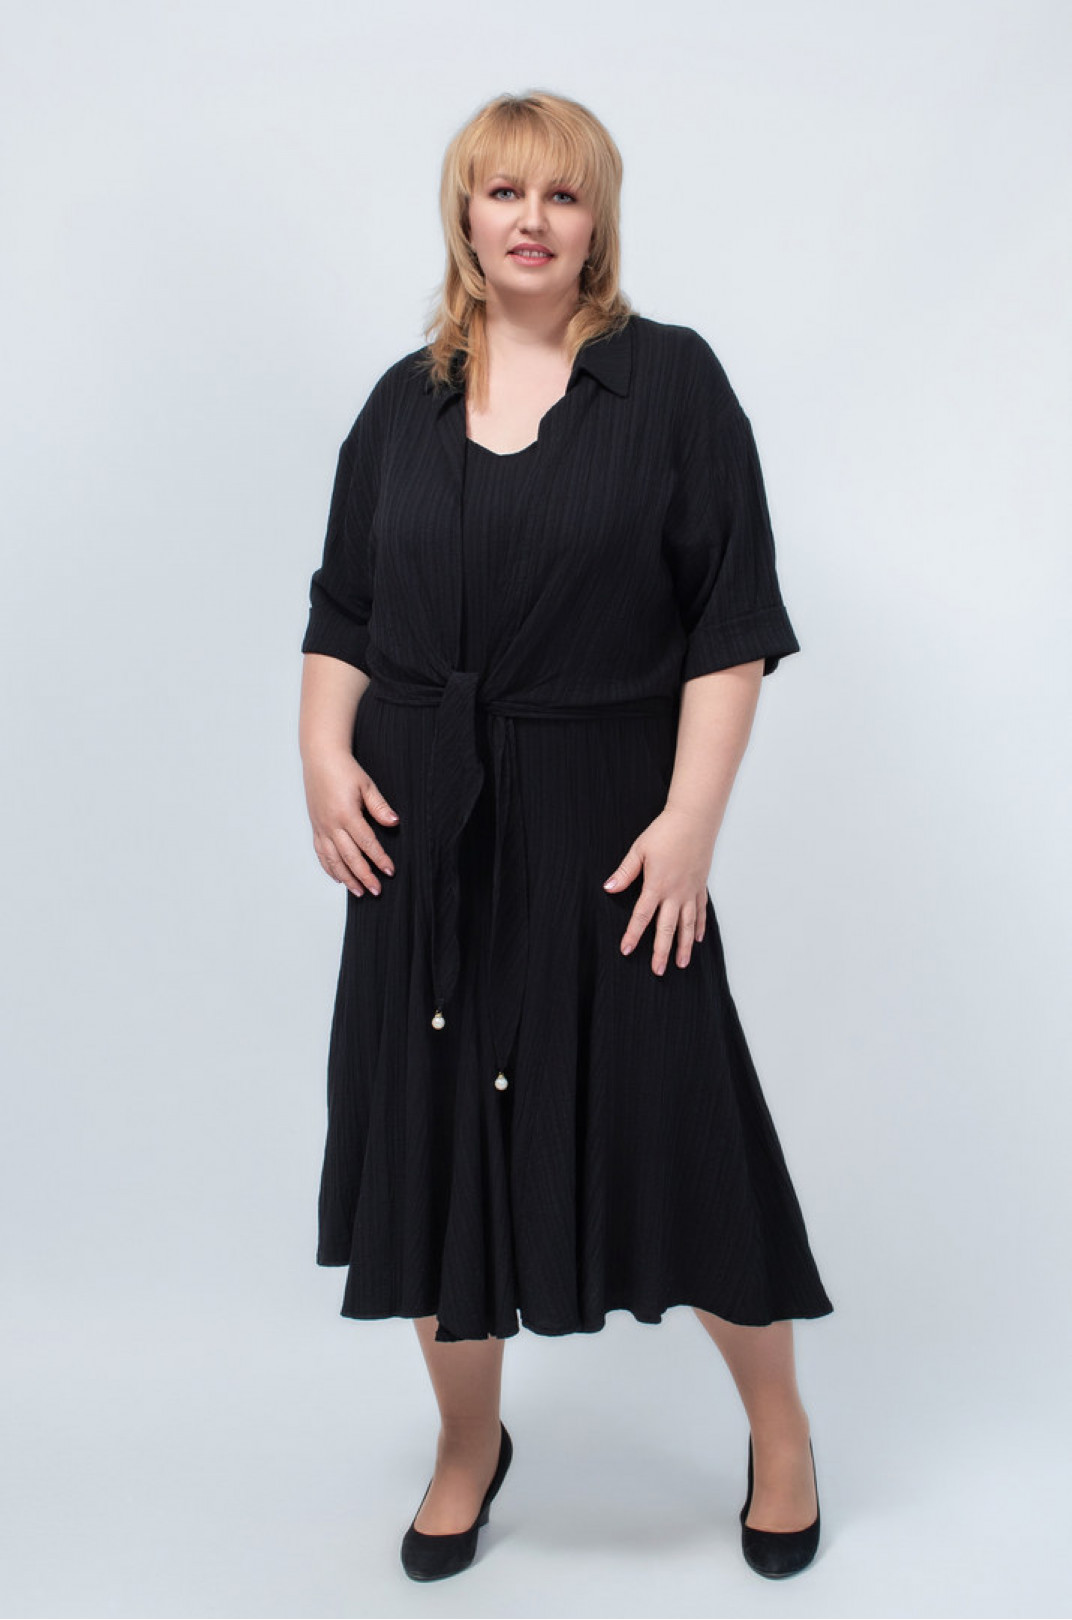 Сарафан-сукня міді з болеро чорного кольору батал